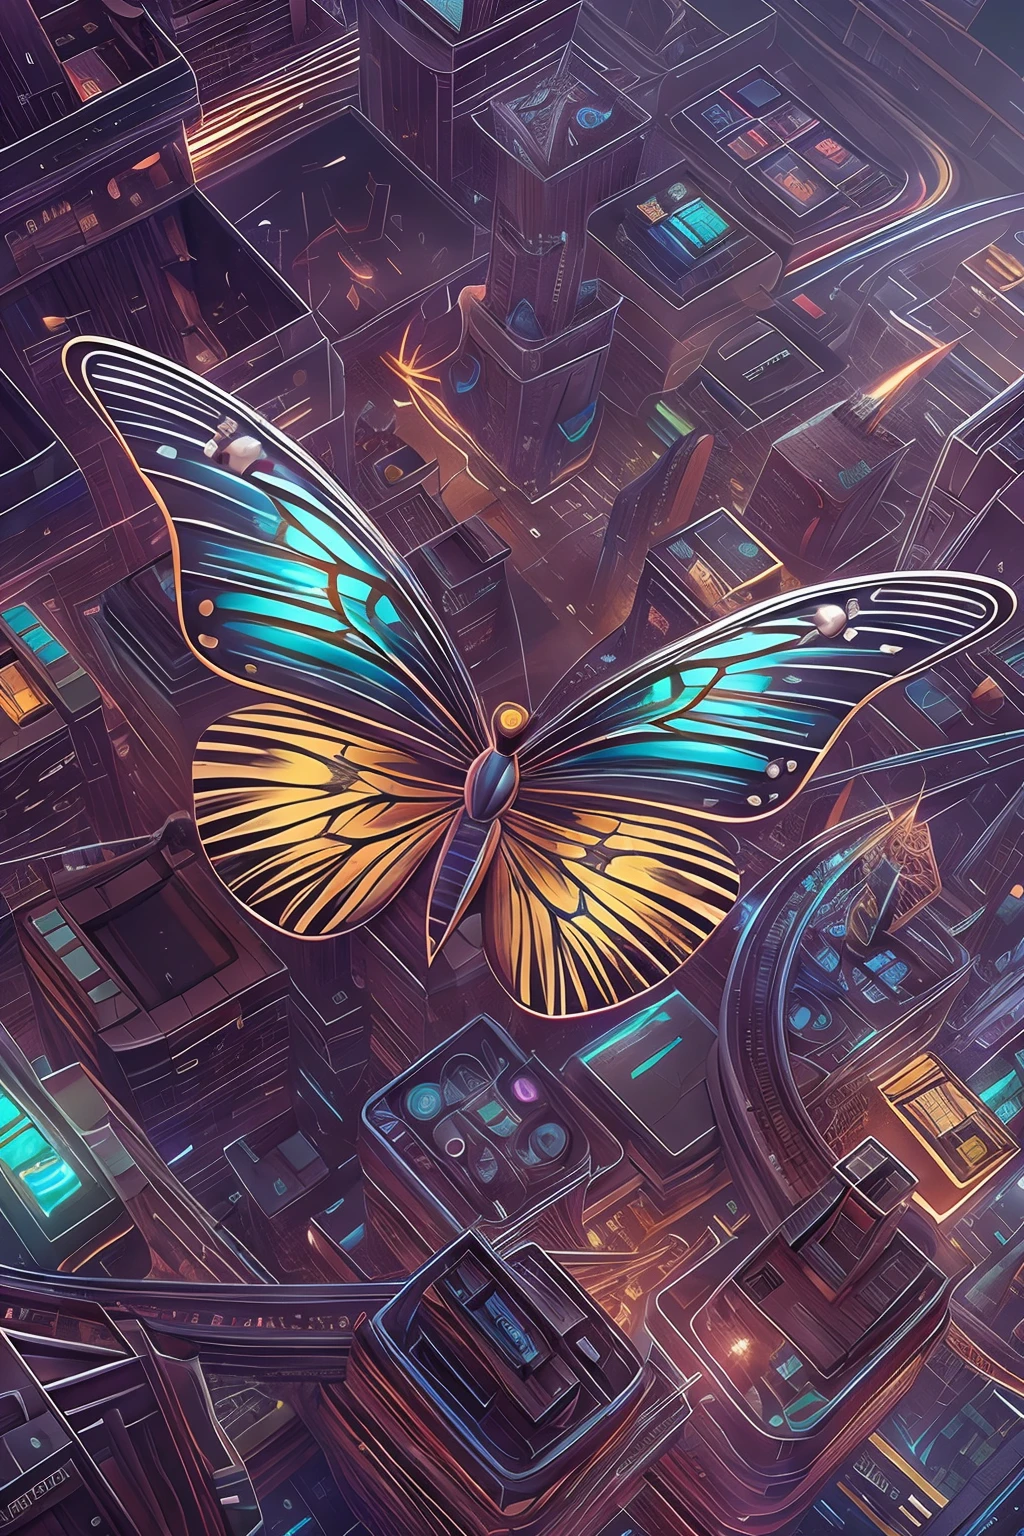 CircuitBoardAI бабочка крупным планом，Фон молния, излучающая бабочка,  бабочка в звездном небе，Футуристическая научно-фантастическая бабочка, футуристический городской фон，Высокодетализированное волшебное цифровое искусство 4K, Высокодетализированное цифровое фэнтезийное произведение искусства, Эпические сюрреалистические цифровые иллюстрации, Высокодетализированное цифровое искусство, красивые цифровые изображения, потрясающее цифровое искусство, Детализированное цифровое искусство 4k, Горячие темы на artstation 4k, 3D эпические иллюстрации